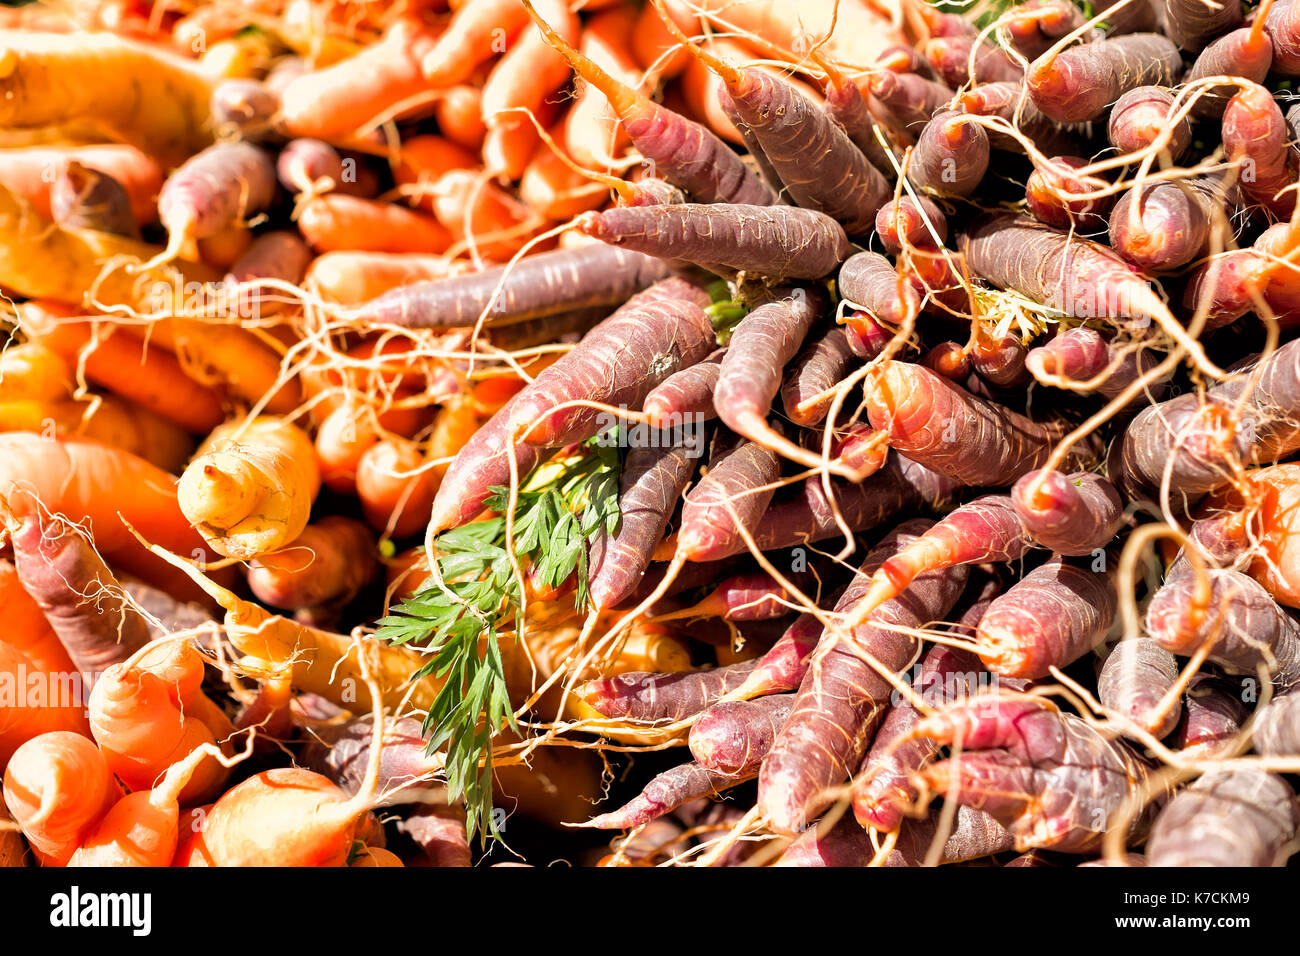 Le carote di colori differenti in un mercato degli agricoltori Foto Stock